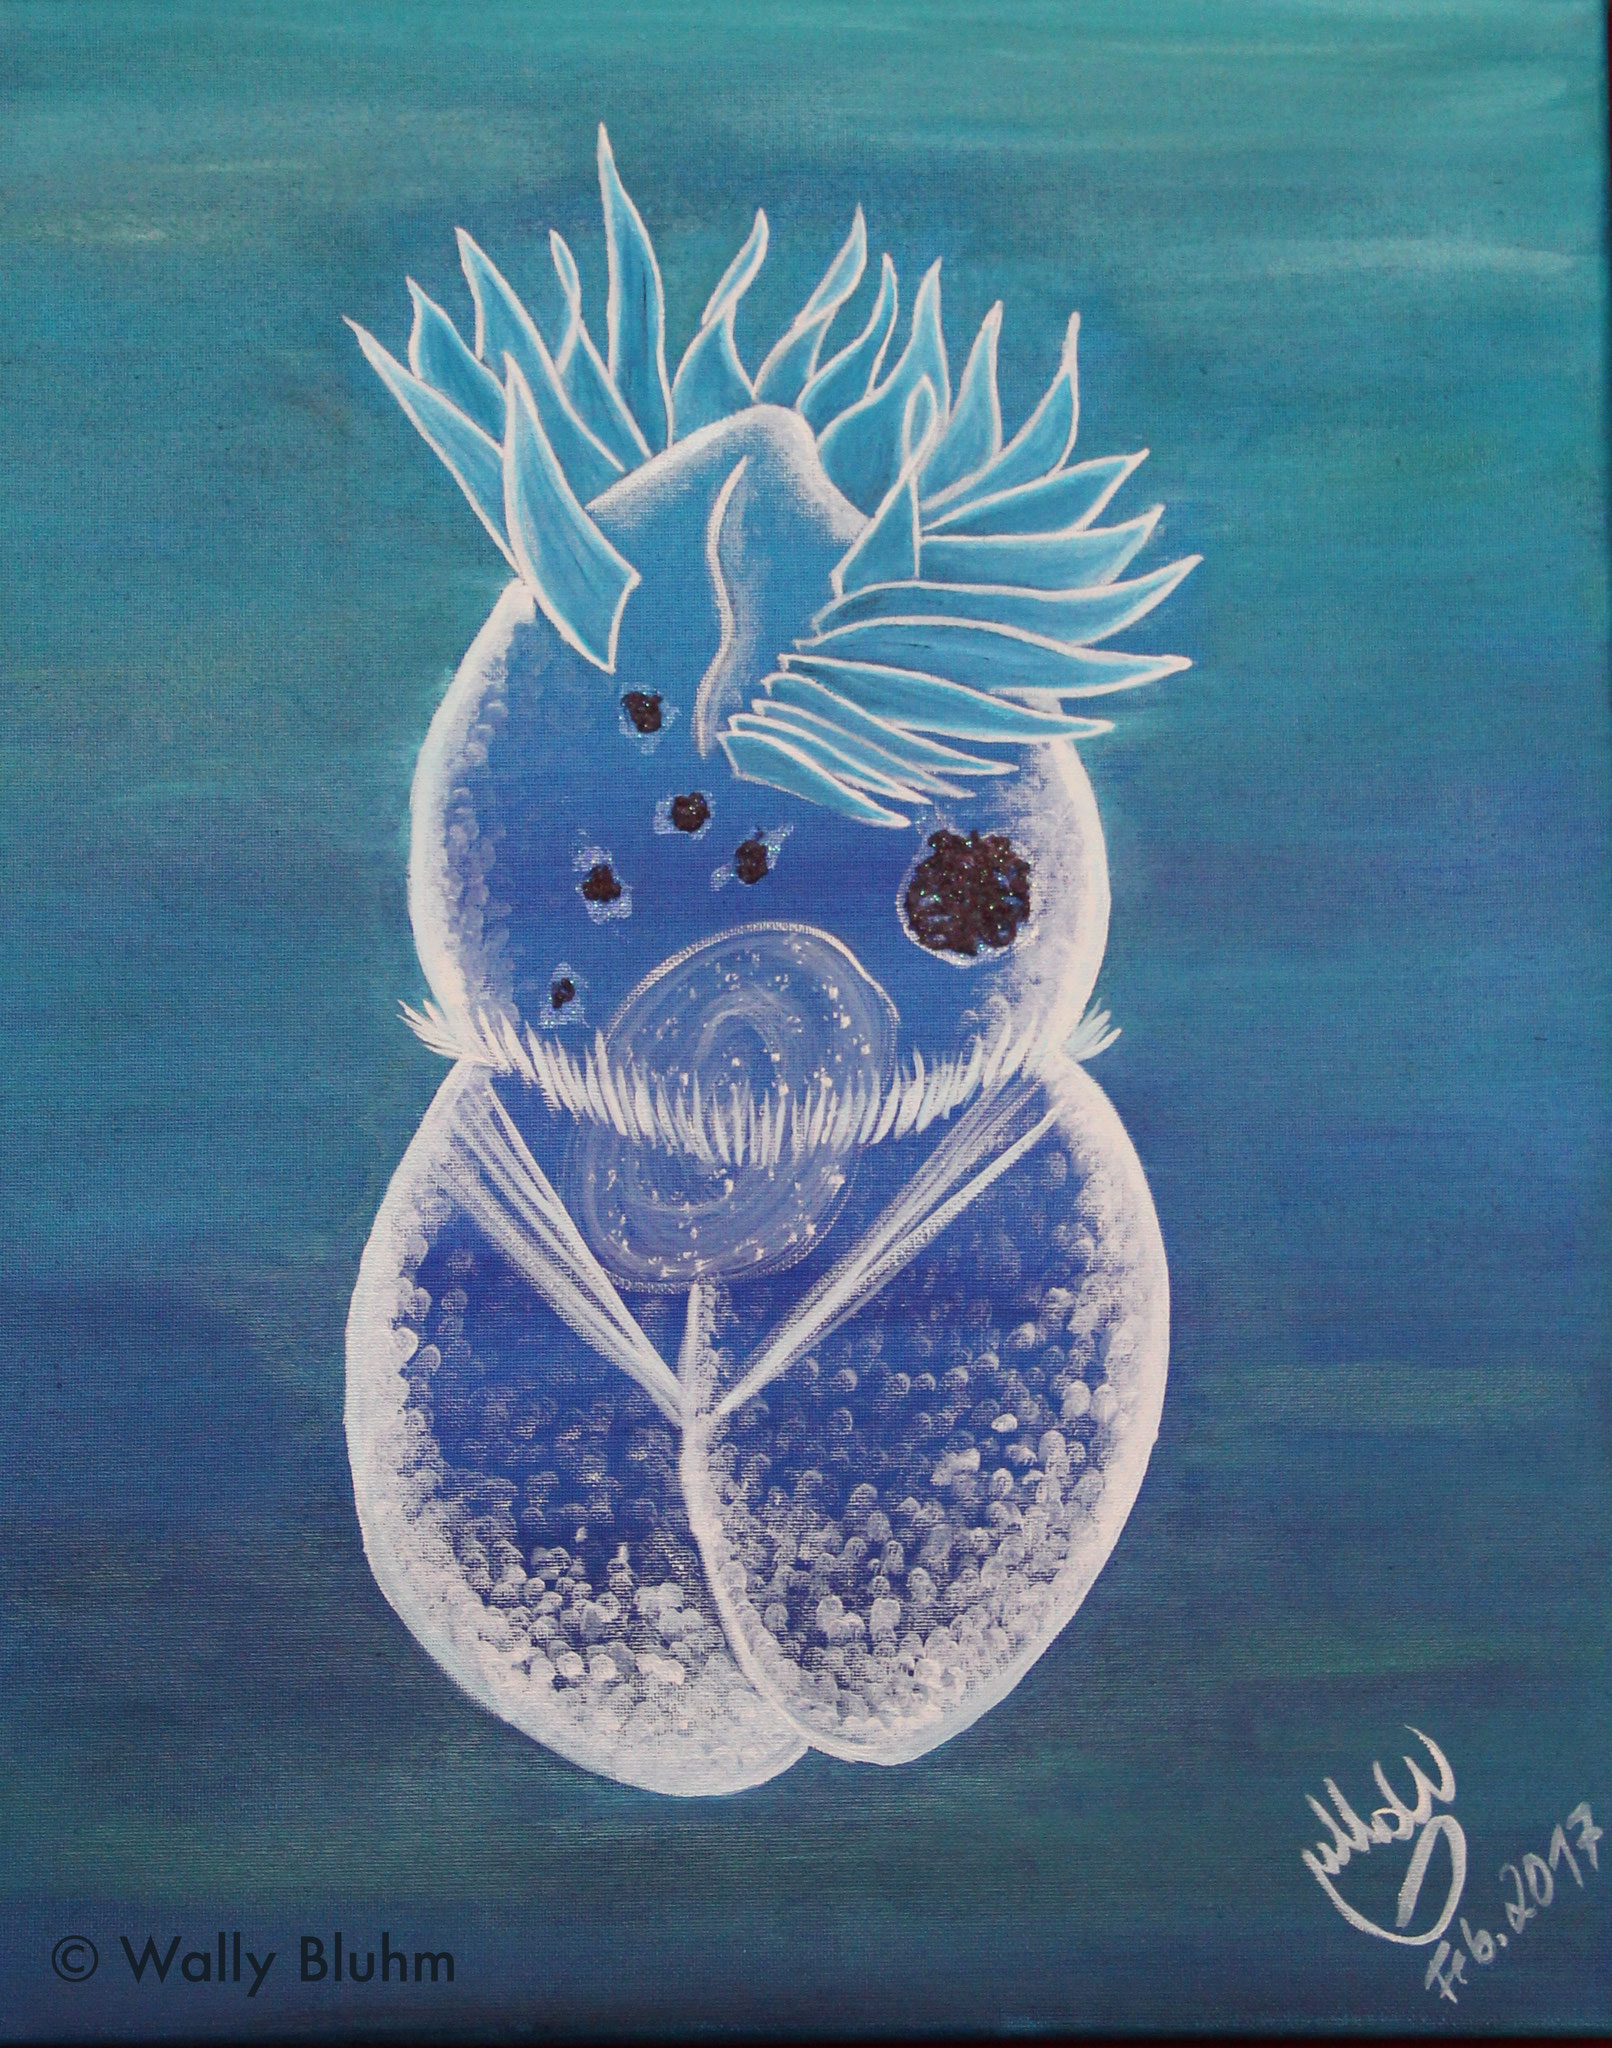 Zooplankton - Ciliate (2017) - 40 x 50 cm, oil on canvas